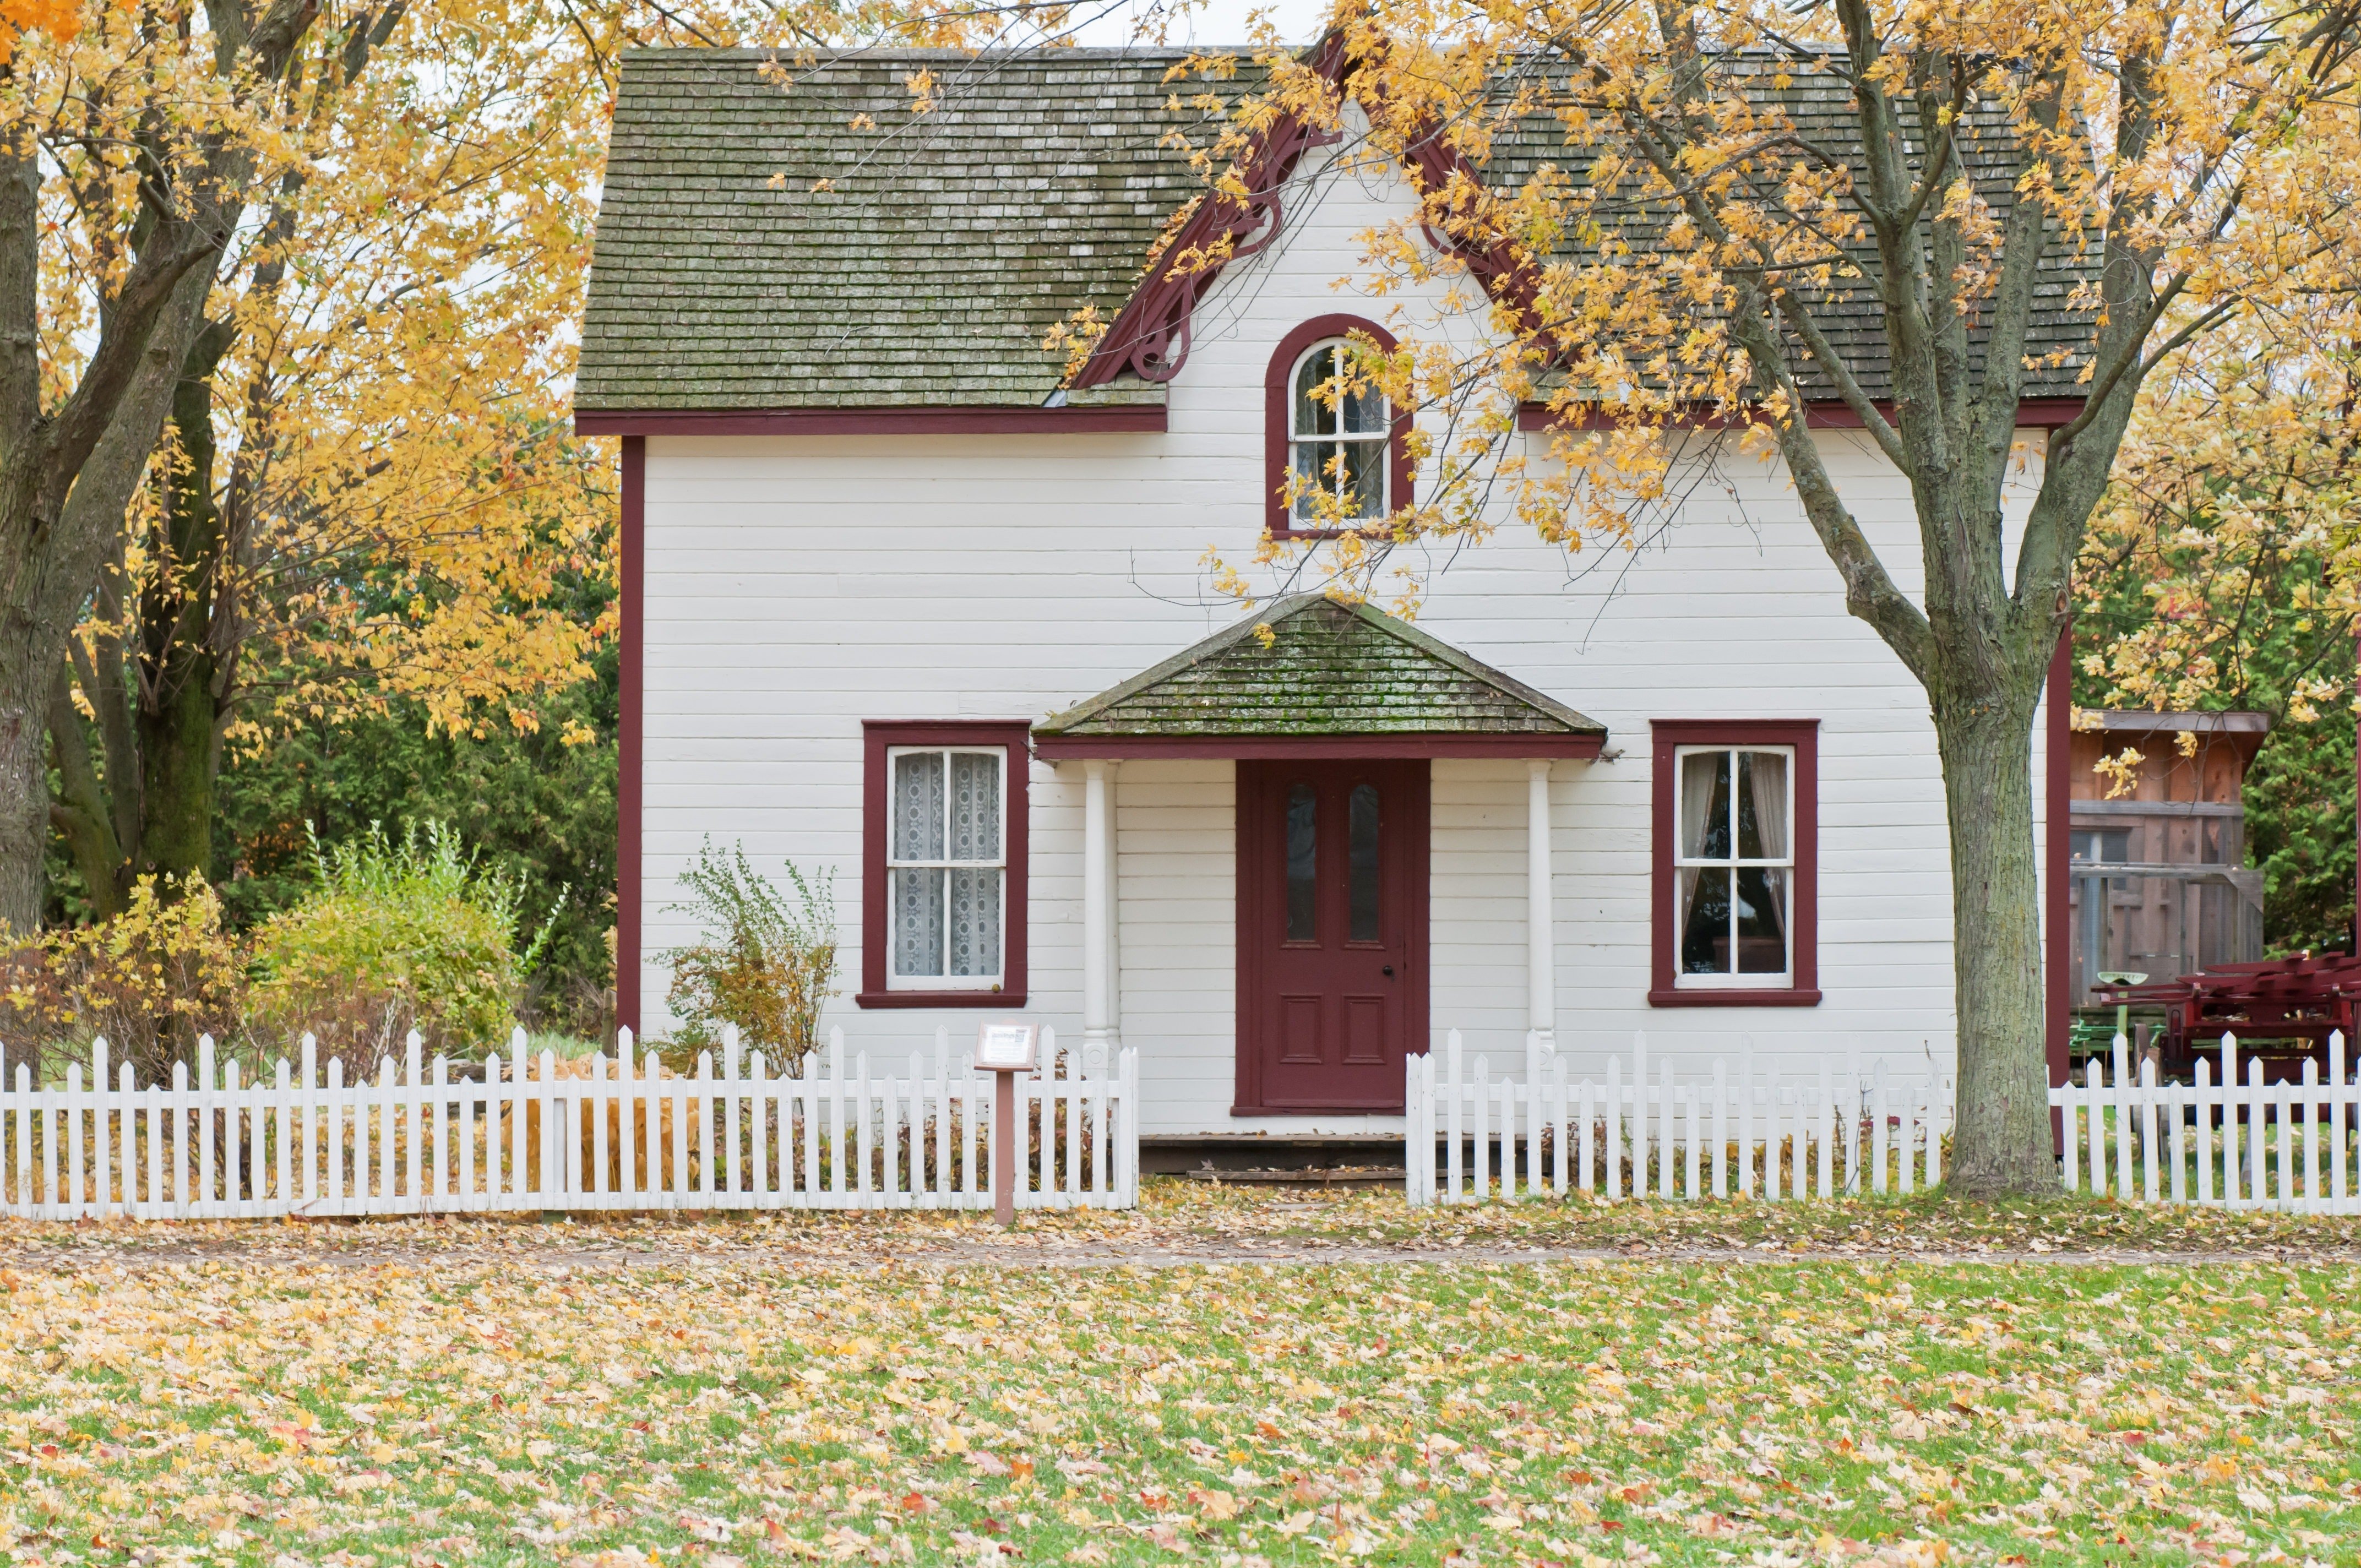 Casa modesta, pero bonita. | Foto: Pexels